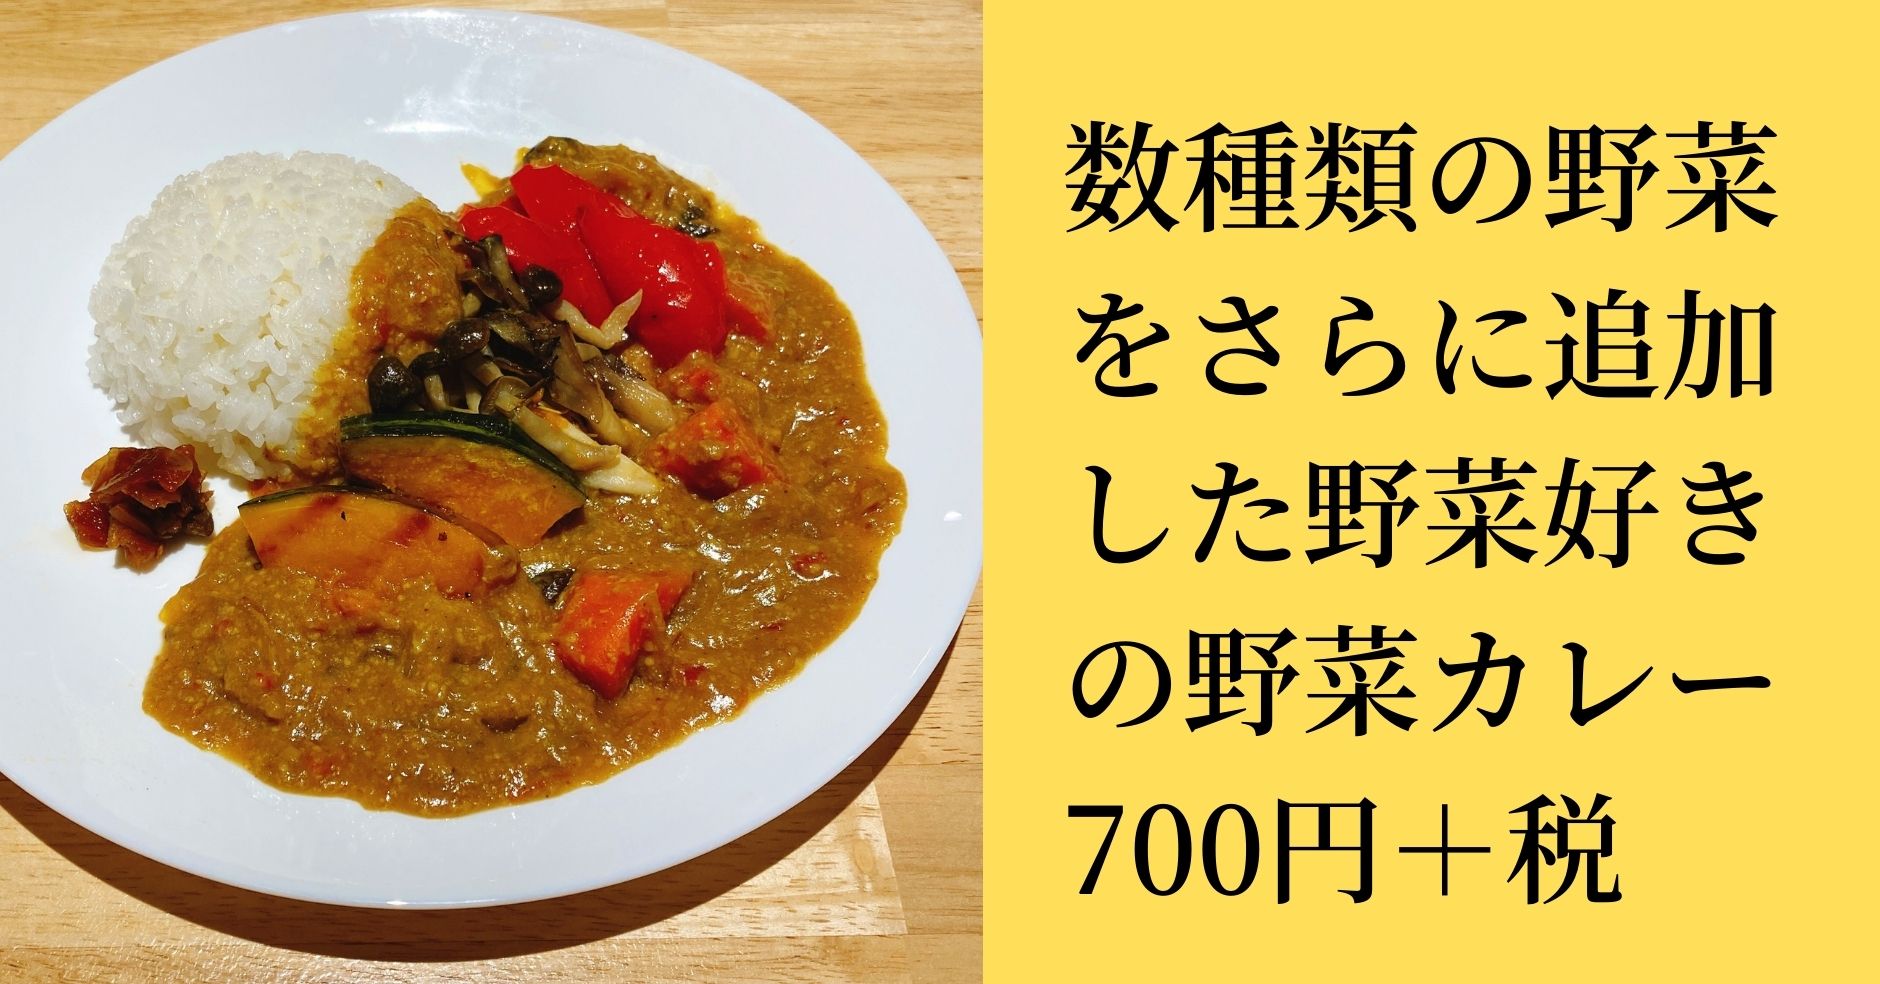 Vegi Curry Plus